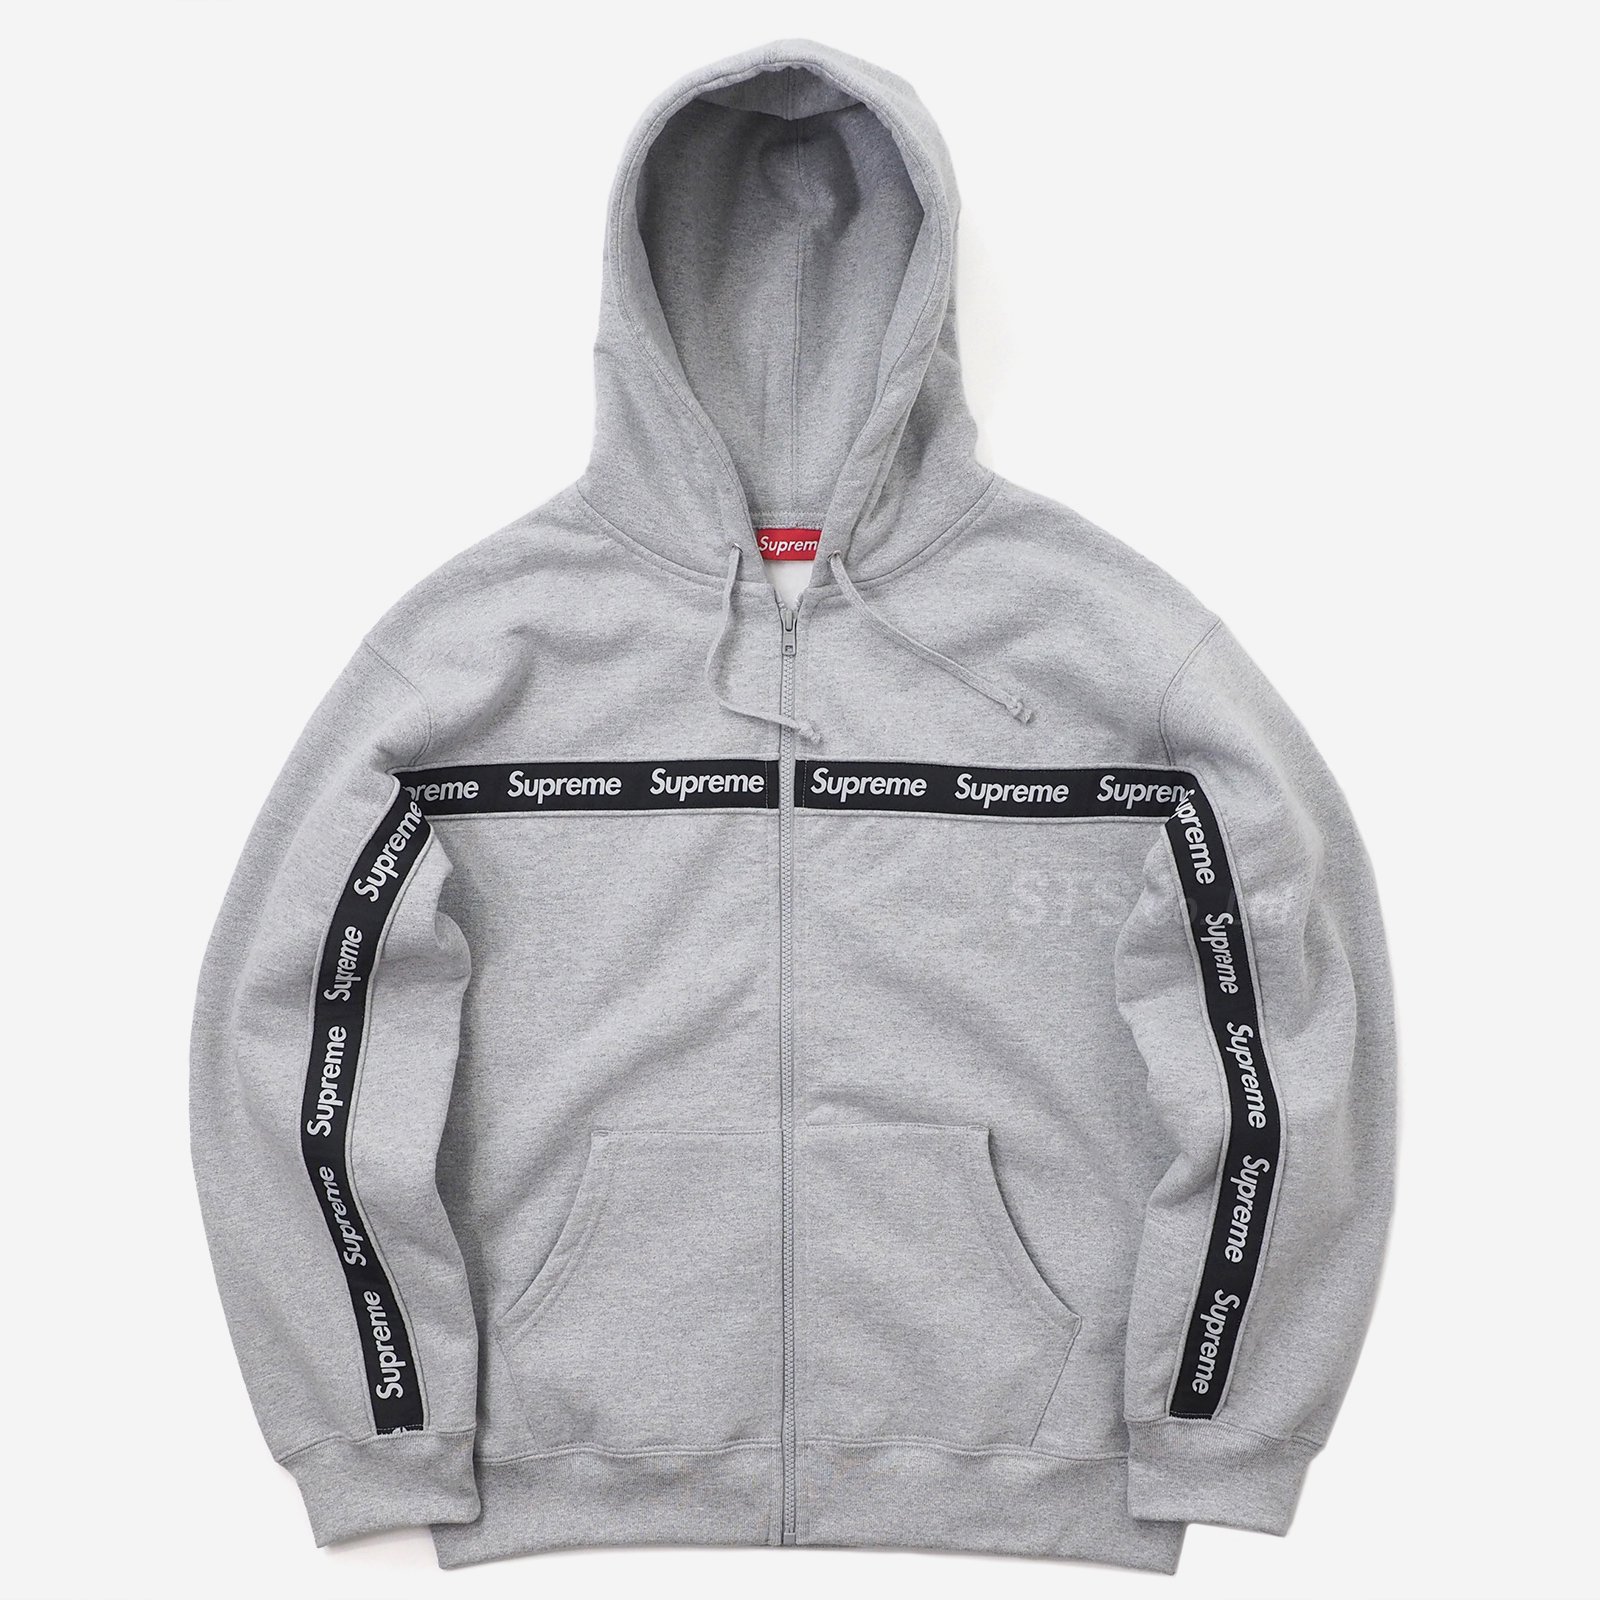 Supreme - Text Stripe Zip Up Hooded Sweatshirt - UG.SHAFT